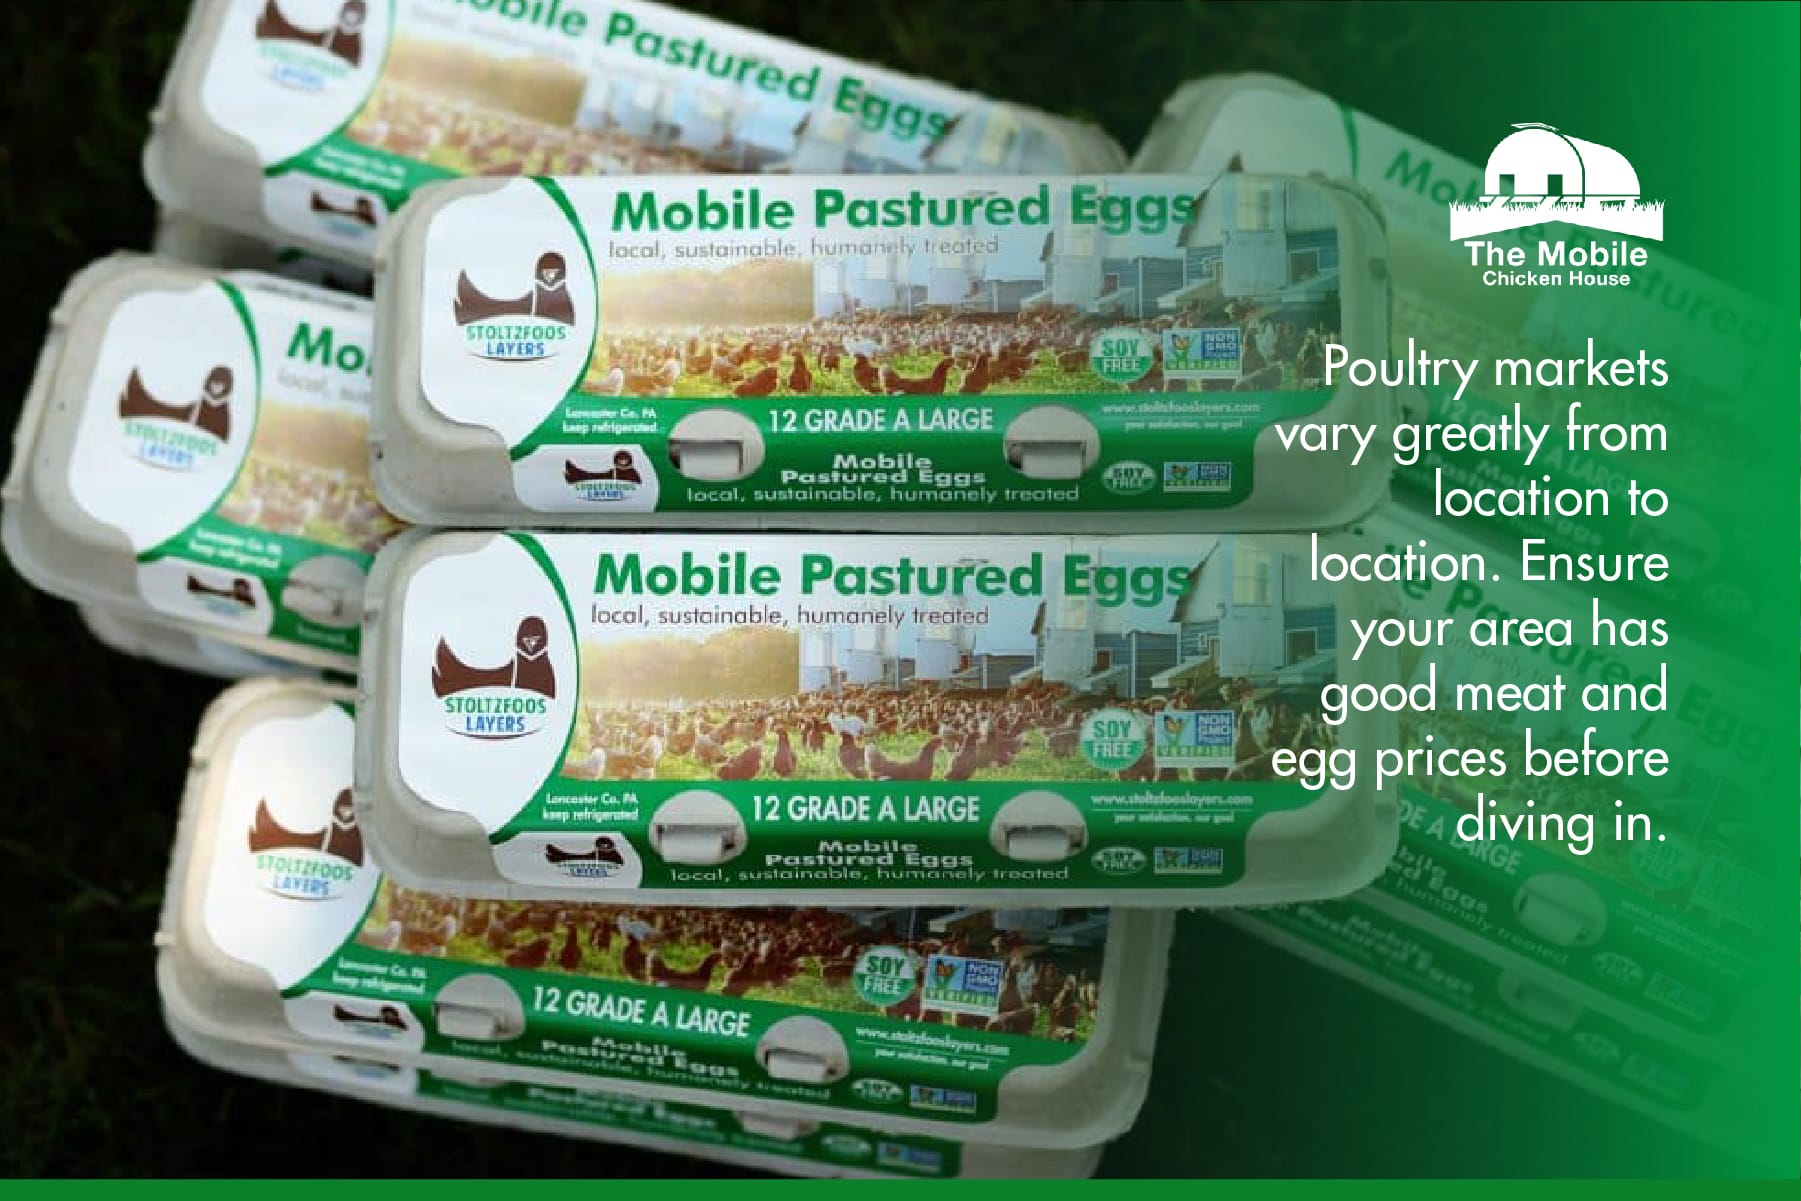 Marketing pastured raised eggs